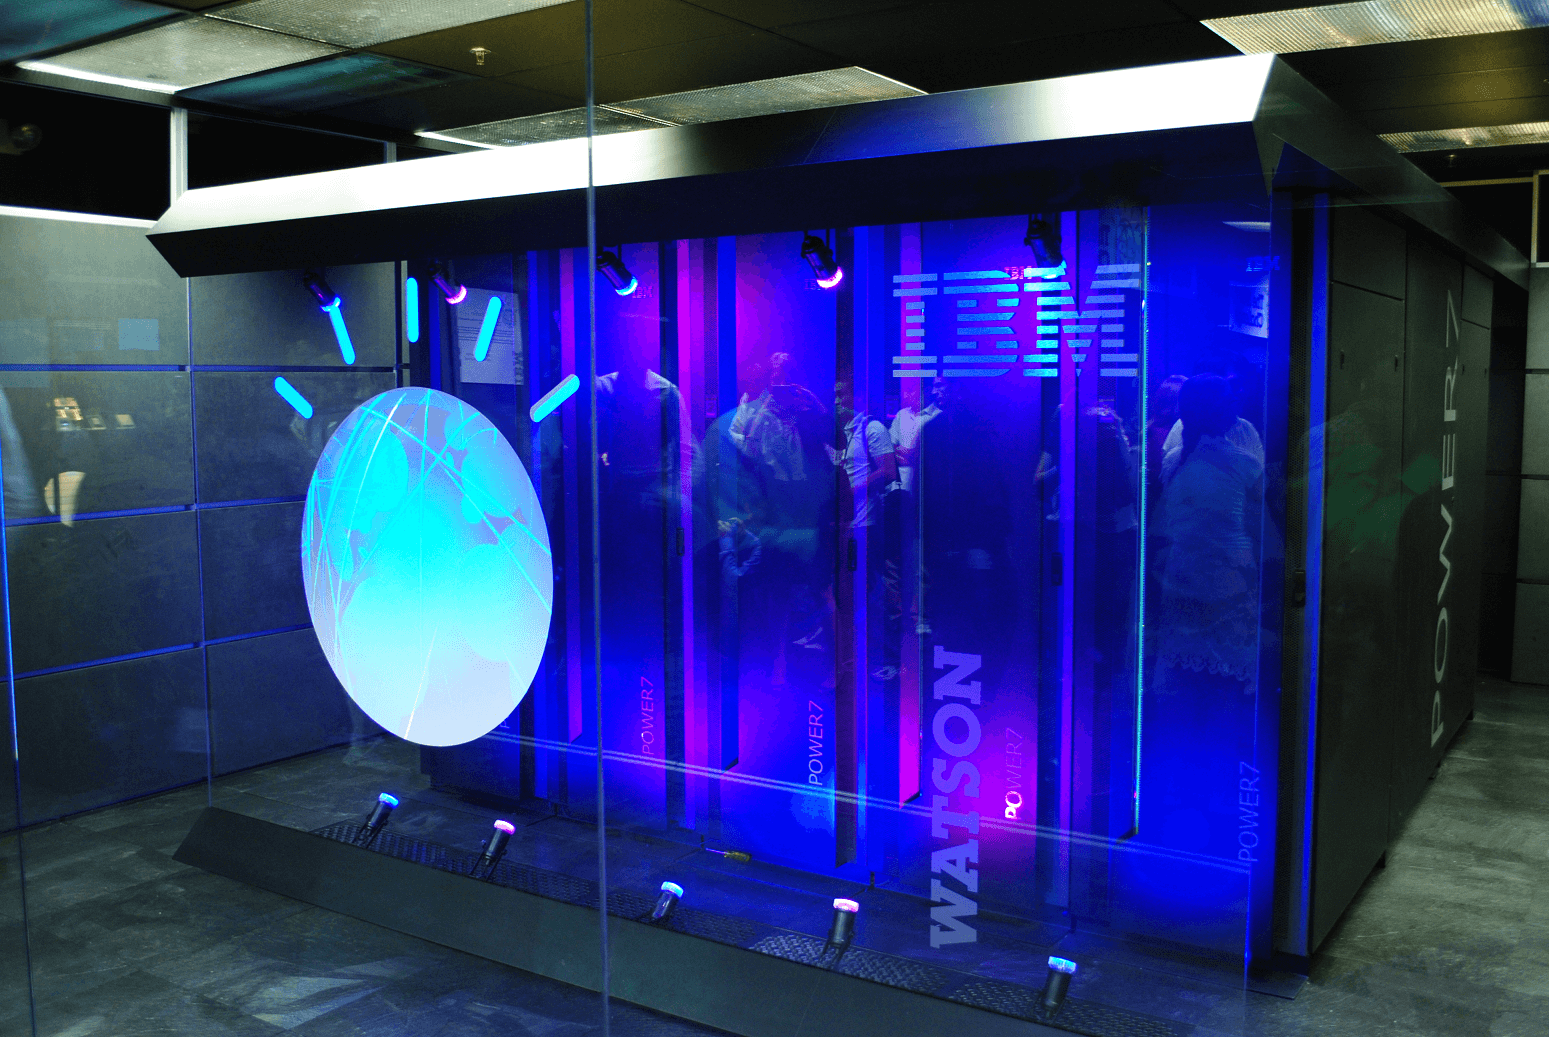 IBM Watson rackskabe